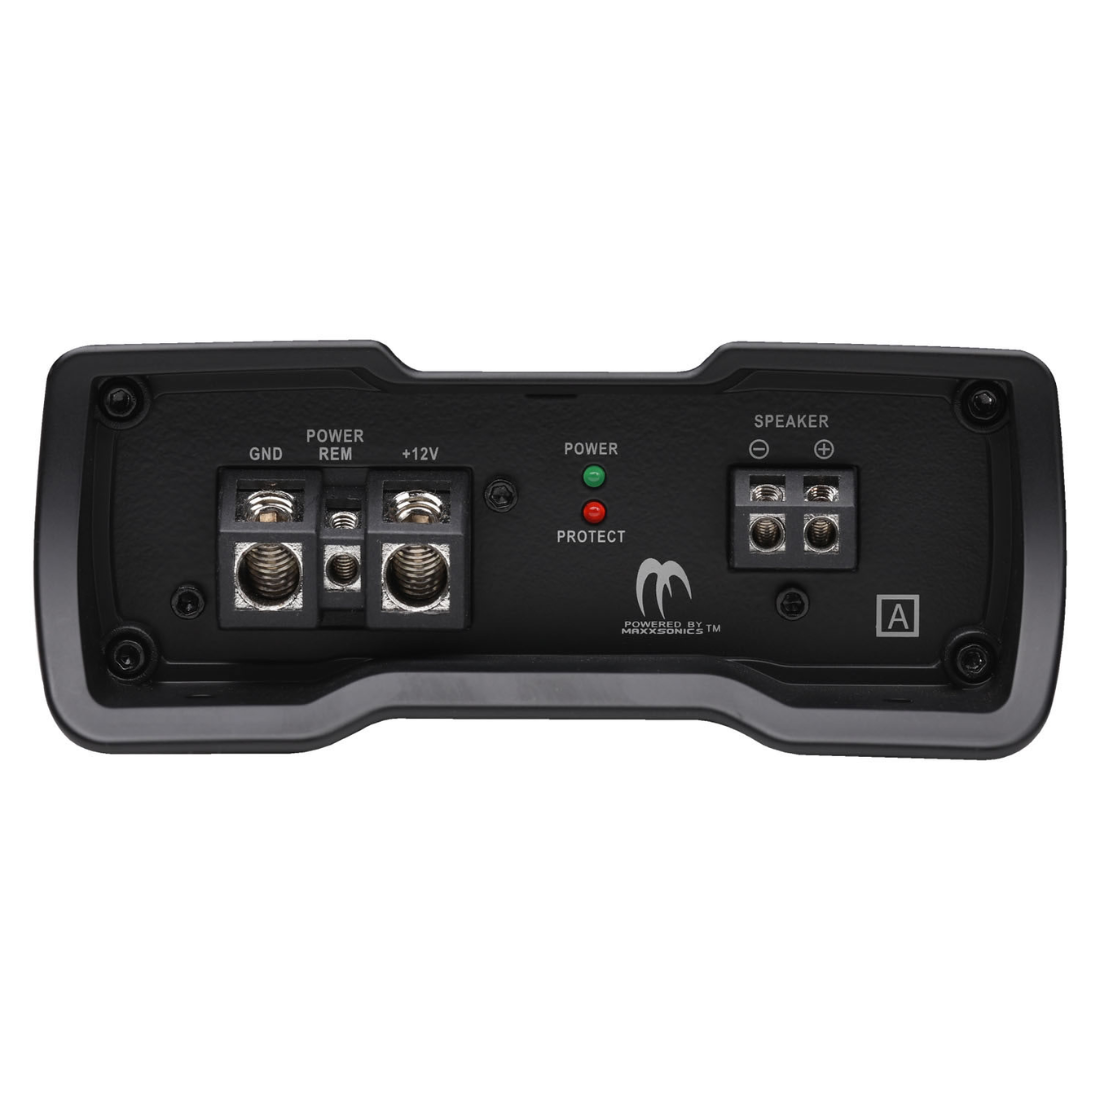 Autotek MM-2025.1D 2000W Max 1-CH Monoblock Class-D Car Audio Compact Amplifier